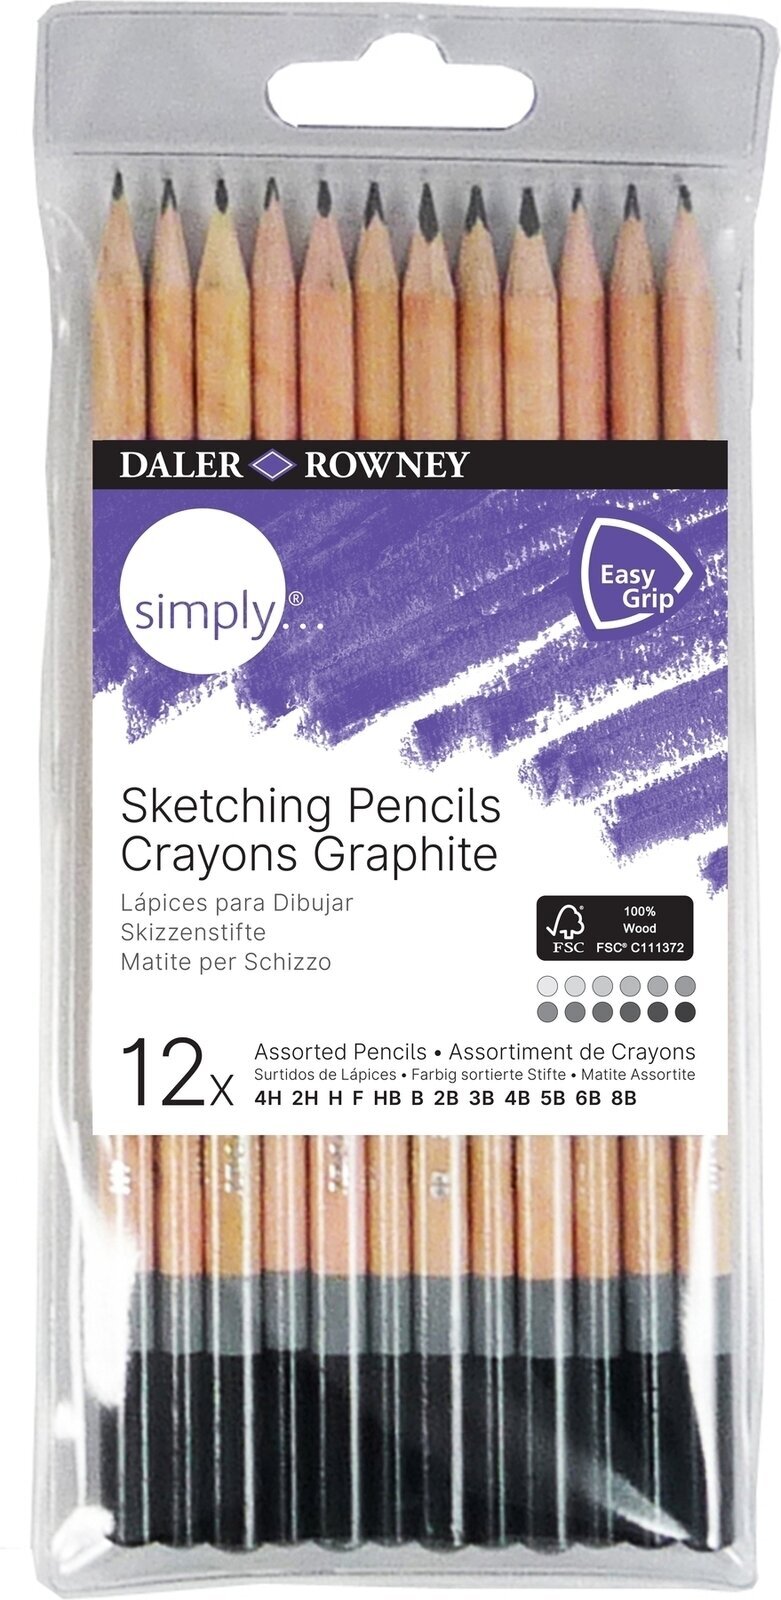 Μολύβι Συμπαγούς Γραφίτη Daler Rowney Simply Sketching Pencils Σετ μολυβιών για καλλιτέχνες 12 τεμ.